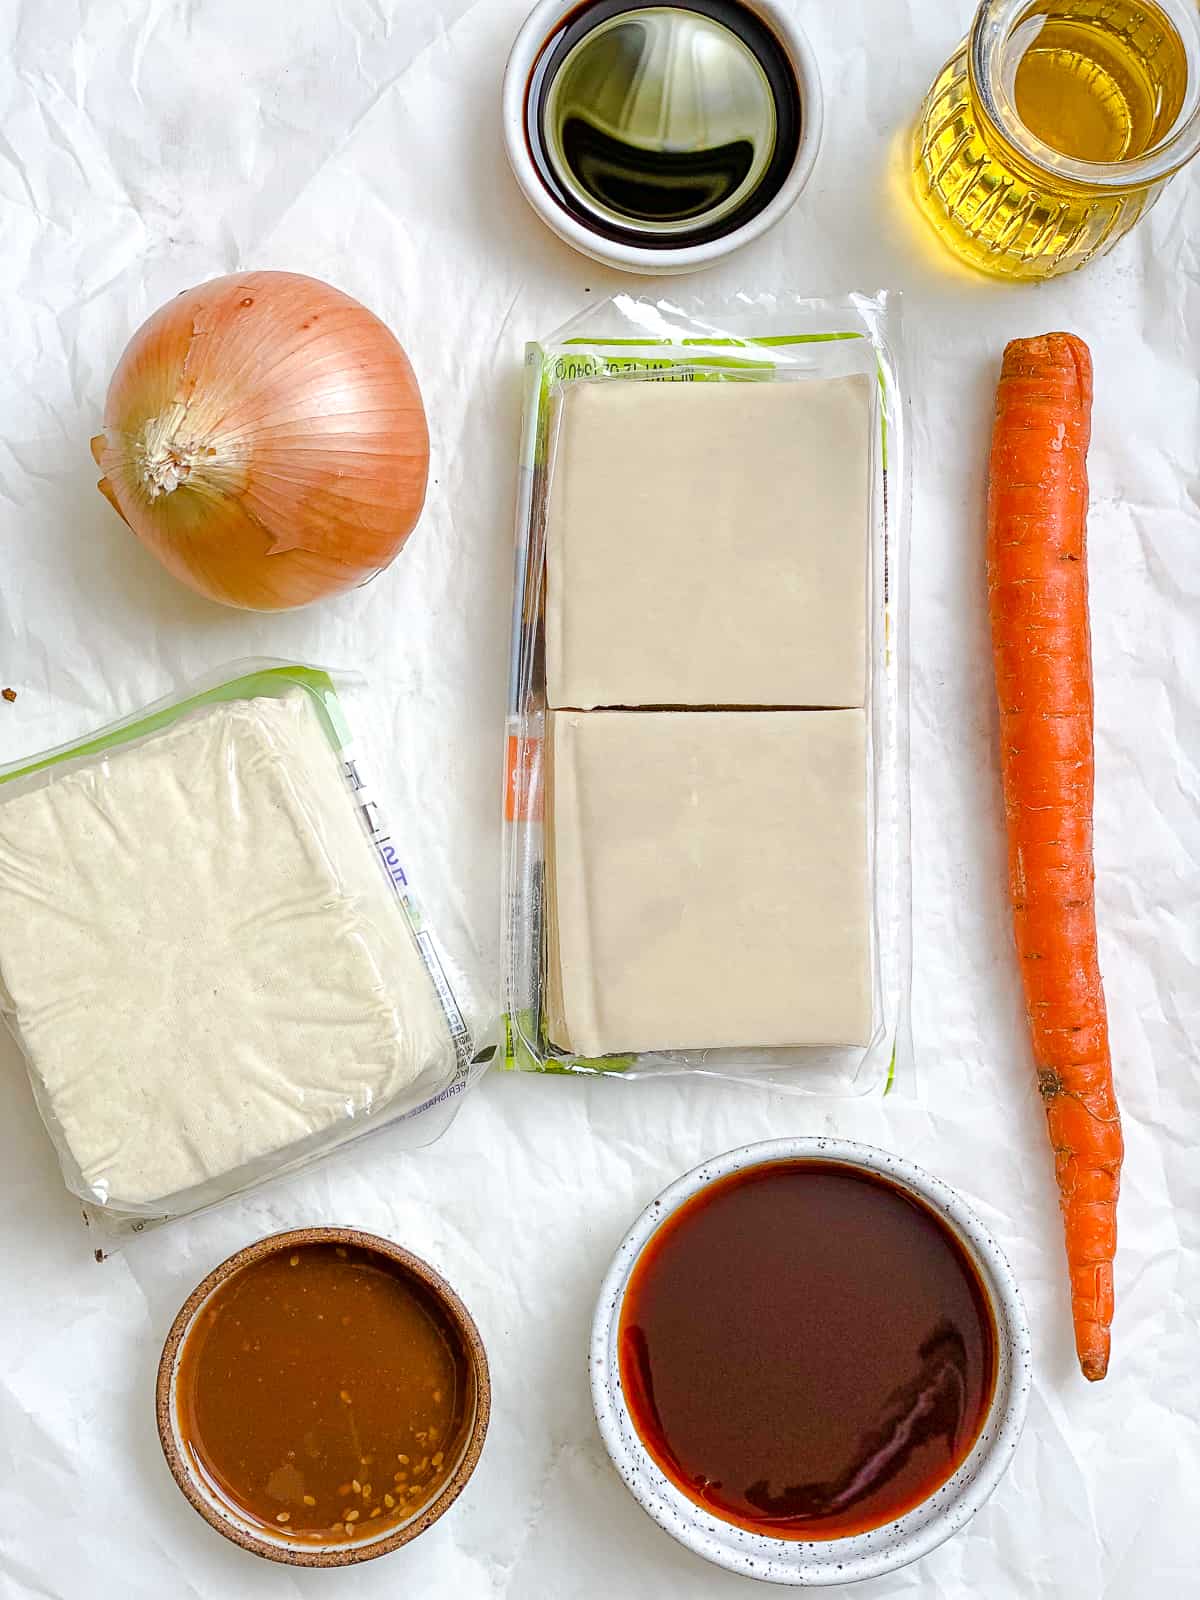 Zutaten für knusprige Wontons mit Tofu-Gemüse, gemessen auf einer weißen Fläche